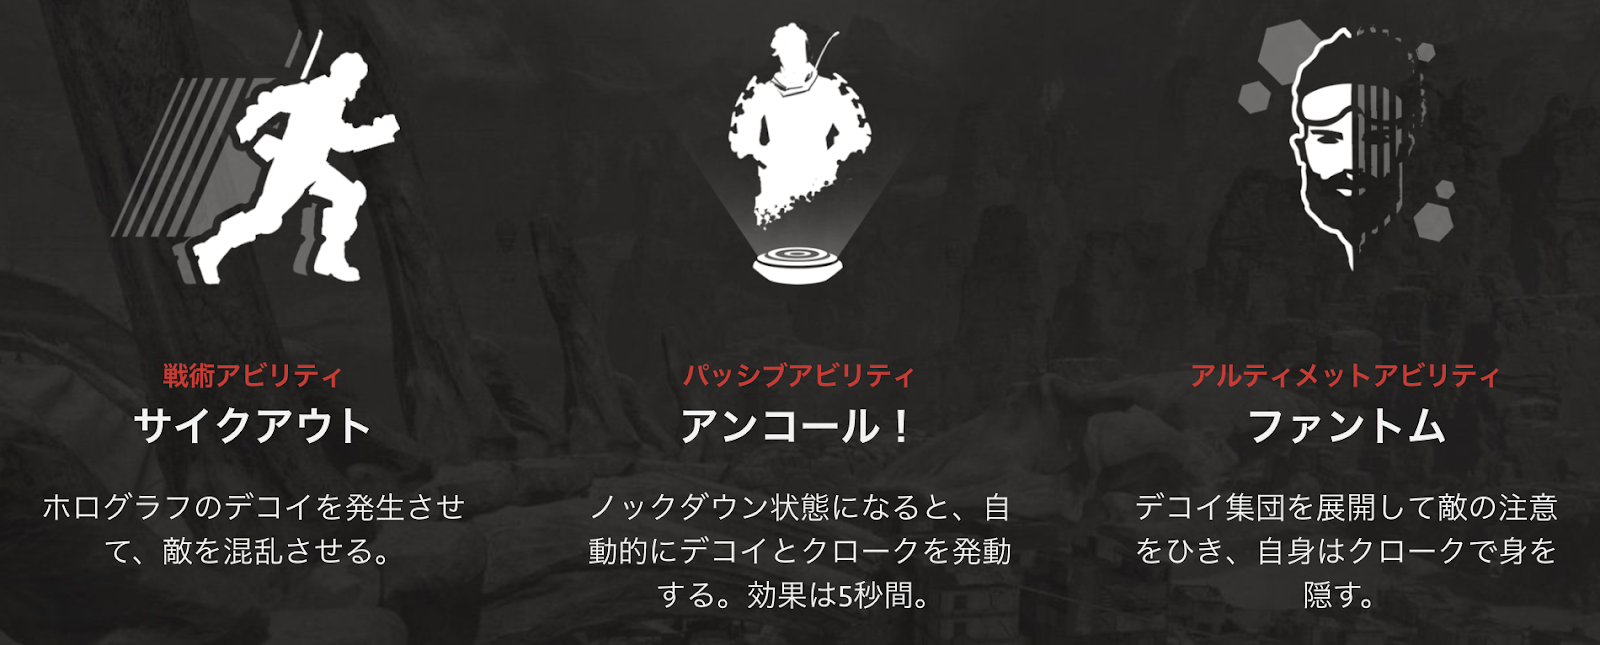 クニさんのゲーム攻略 日本代表 Apex Legends ミラージュで 影分身の術 実況プレイ動画 だってばよ